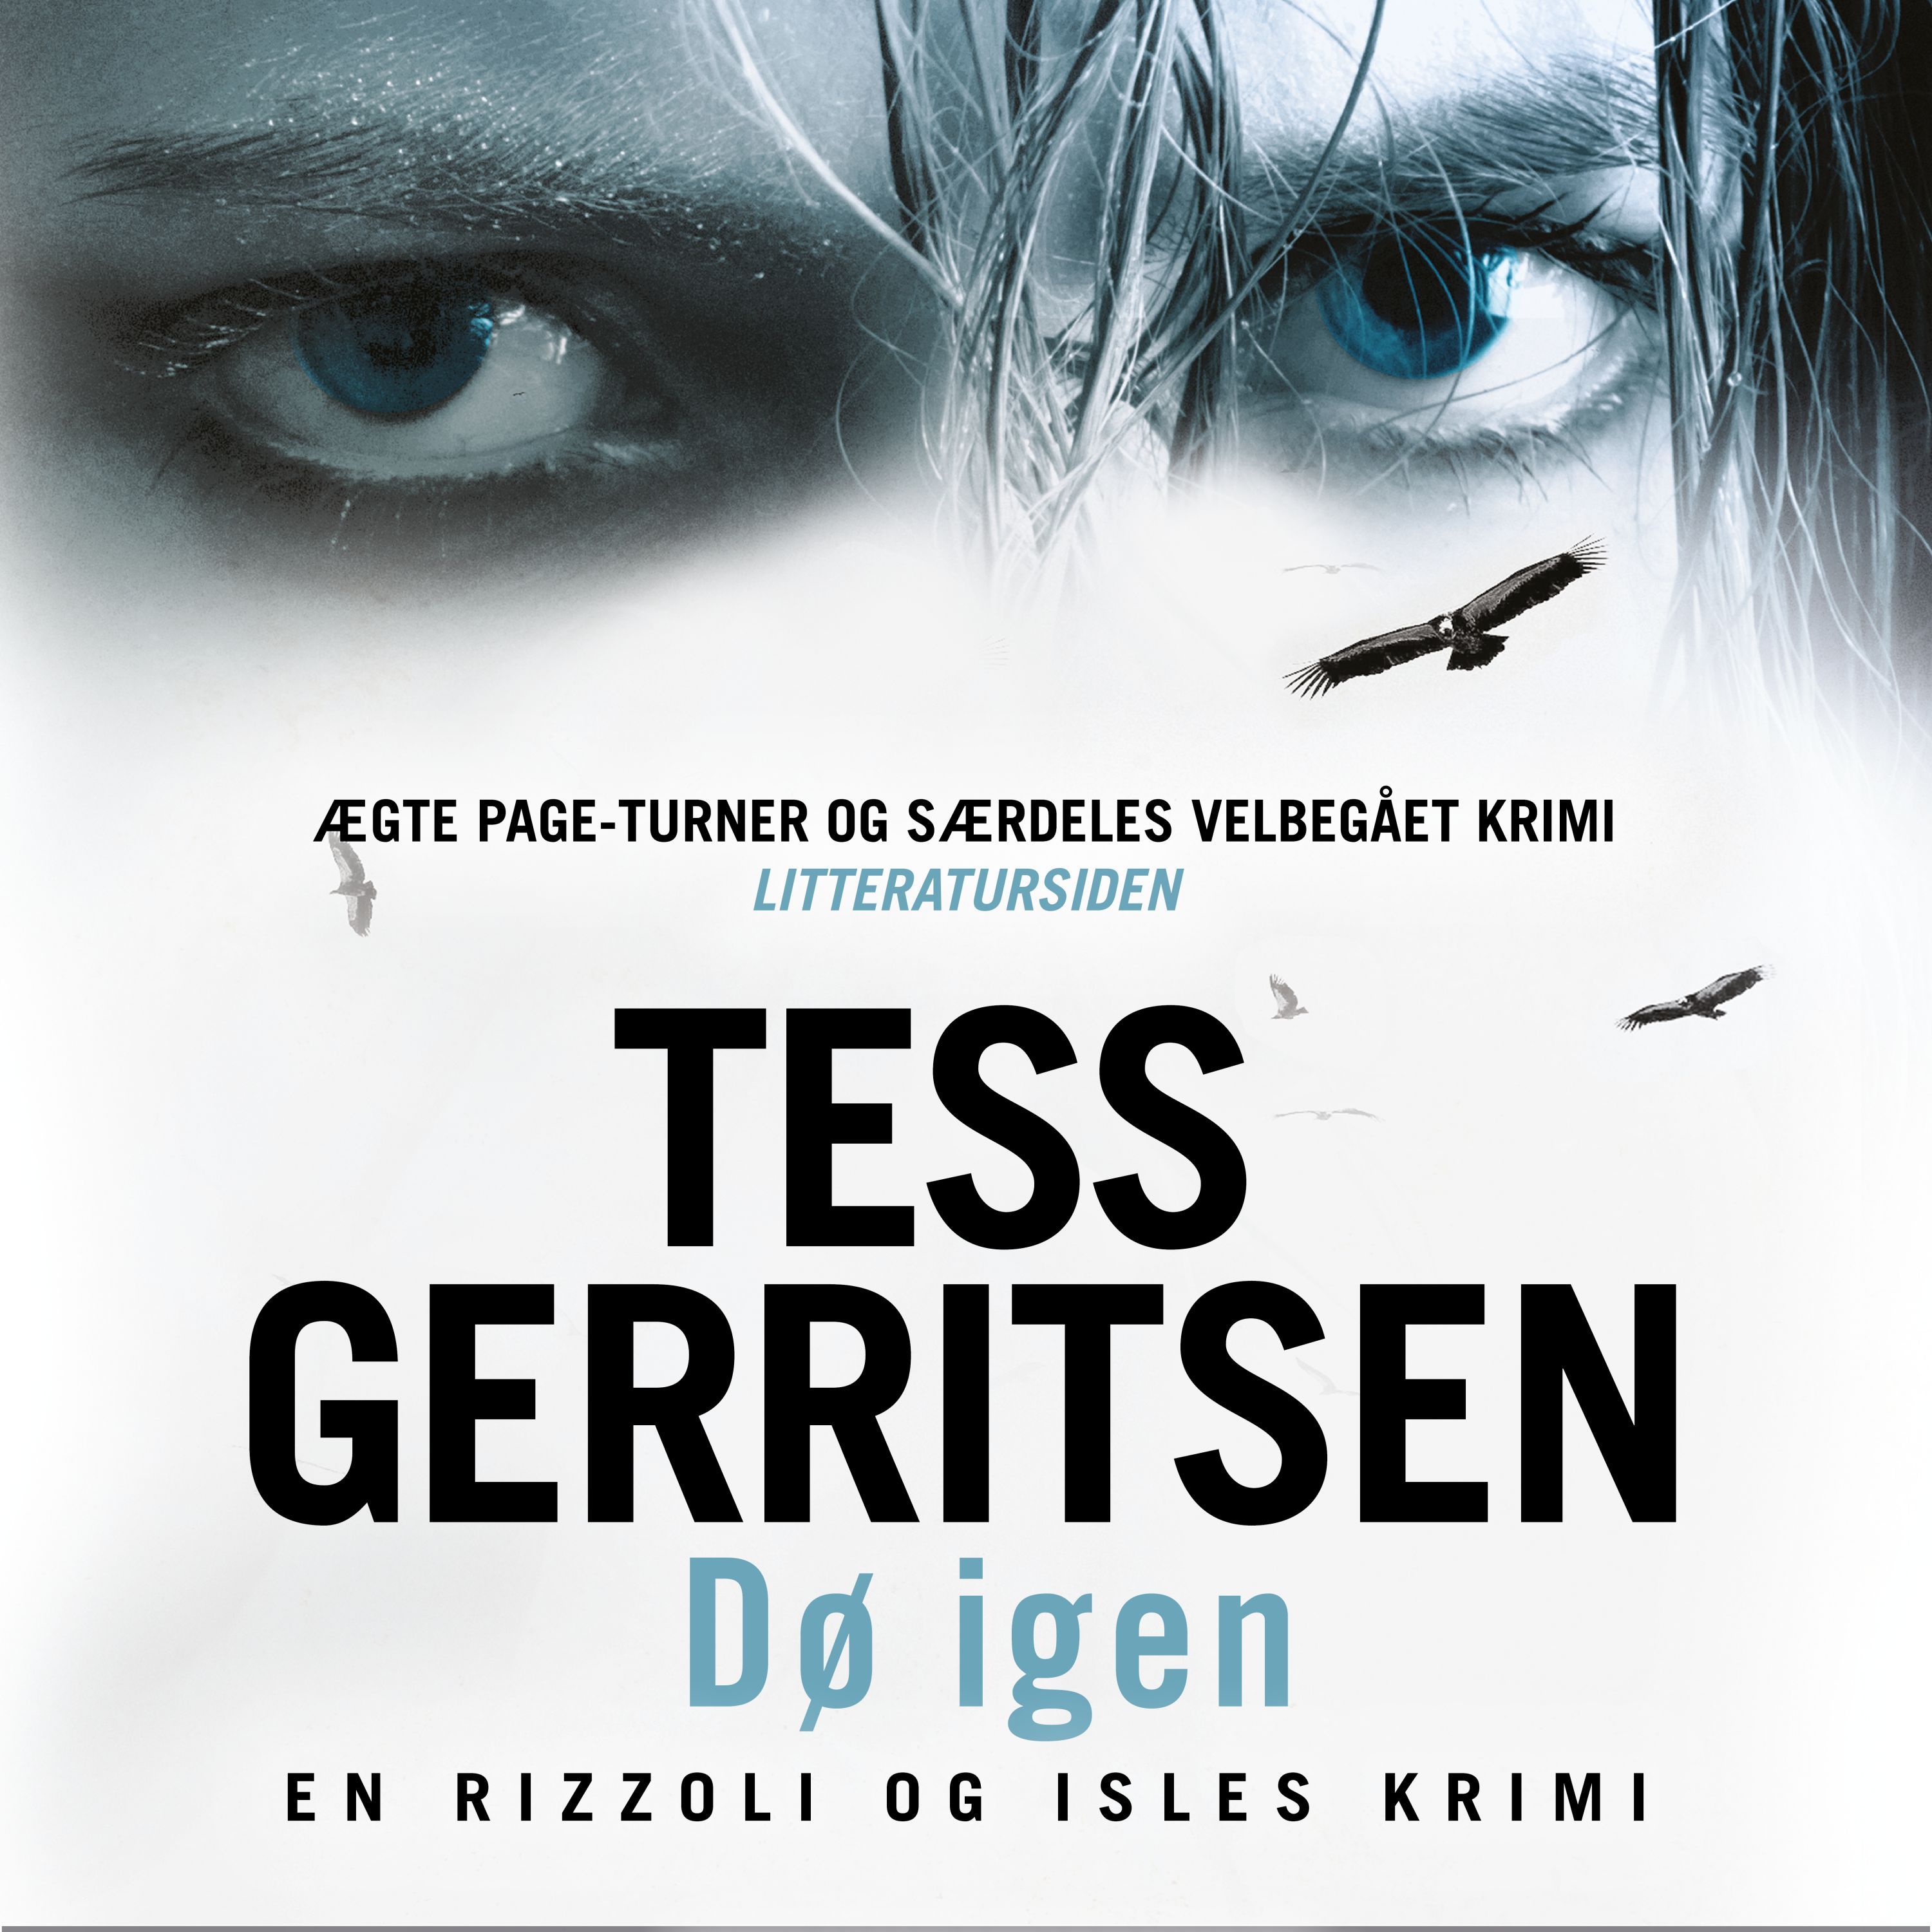 Dø igen, audiobook by Tess Gerritsen